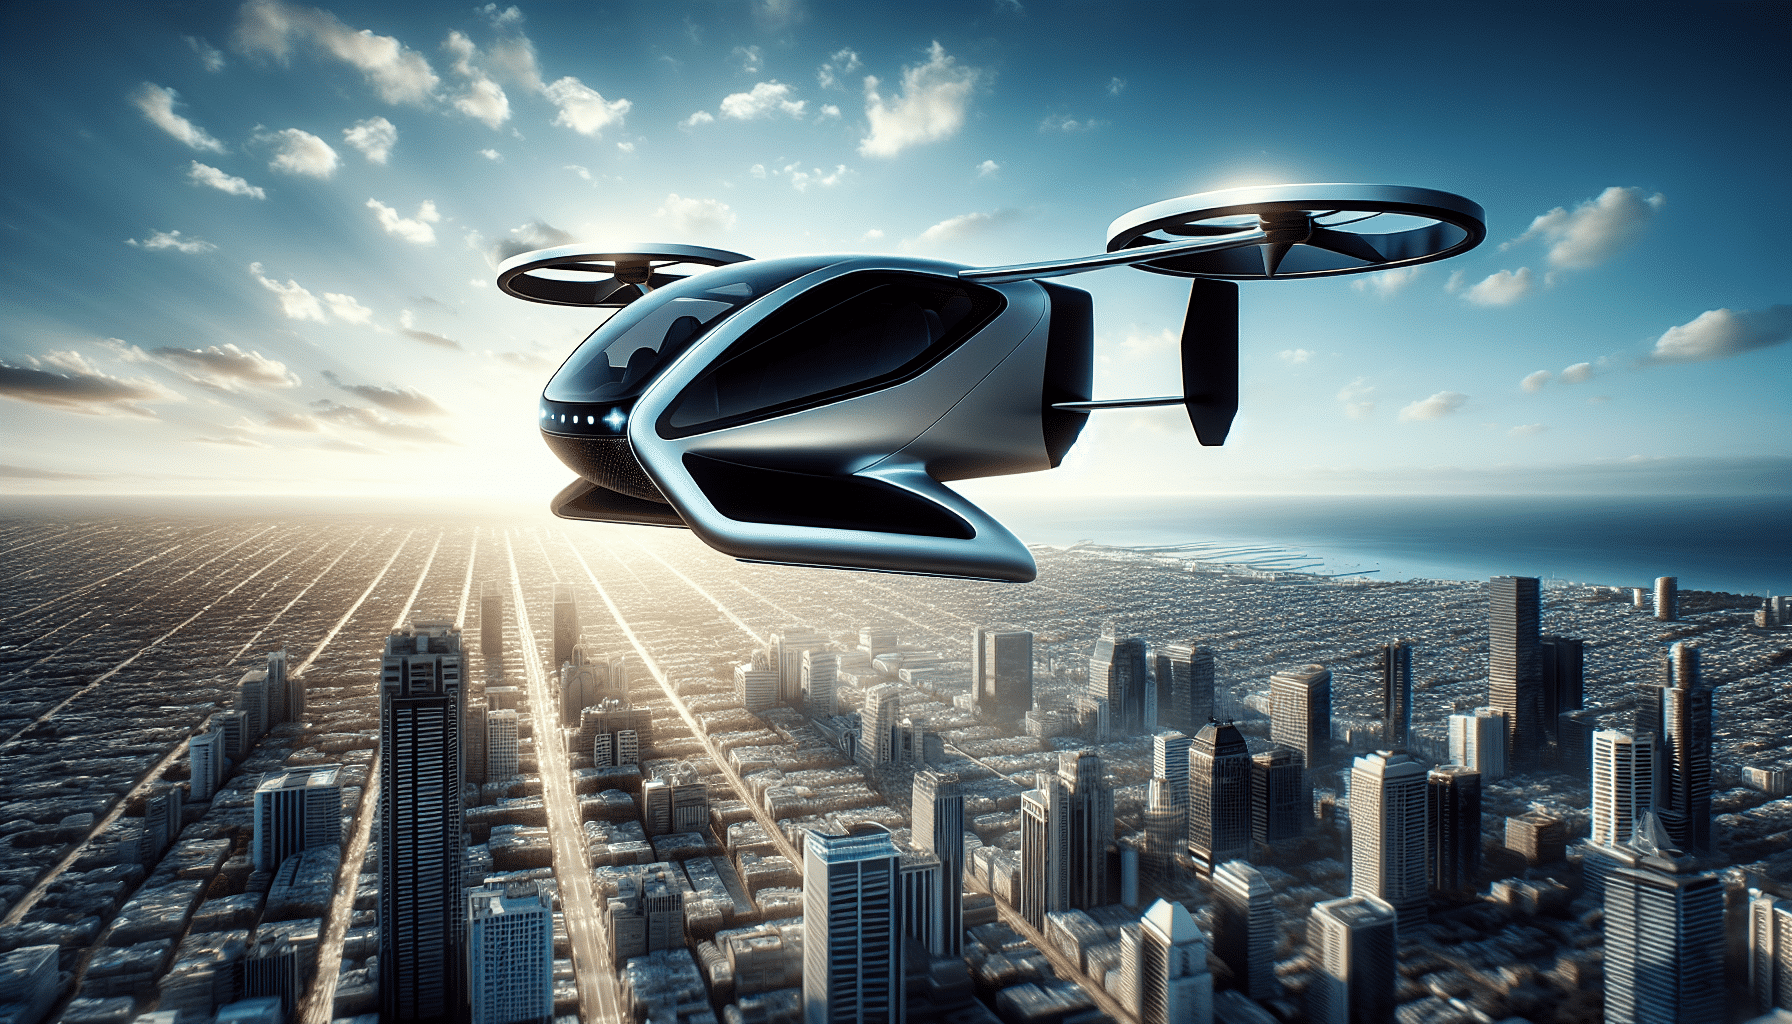 descubre el taxi aéreo de hyundai y uber, diseñado para la movilidad del futuro en las ciudades. conoce sus características y cómo está revolucionando el transporte urbano.